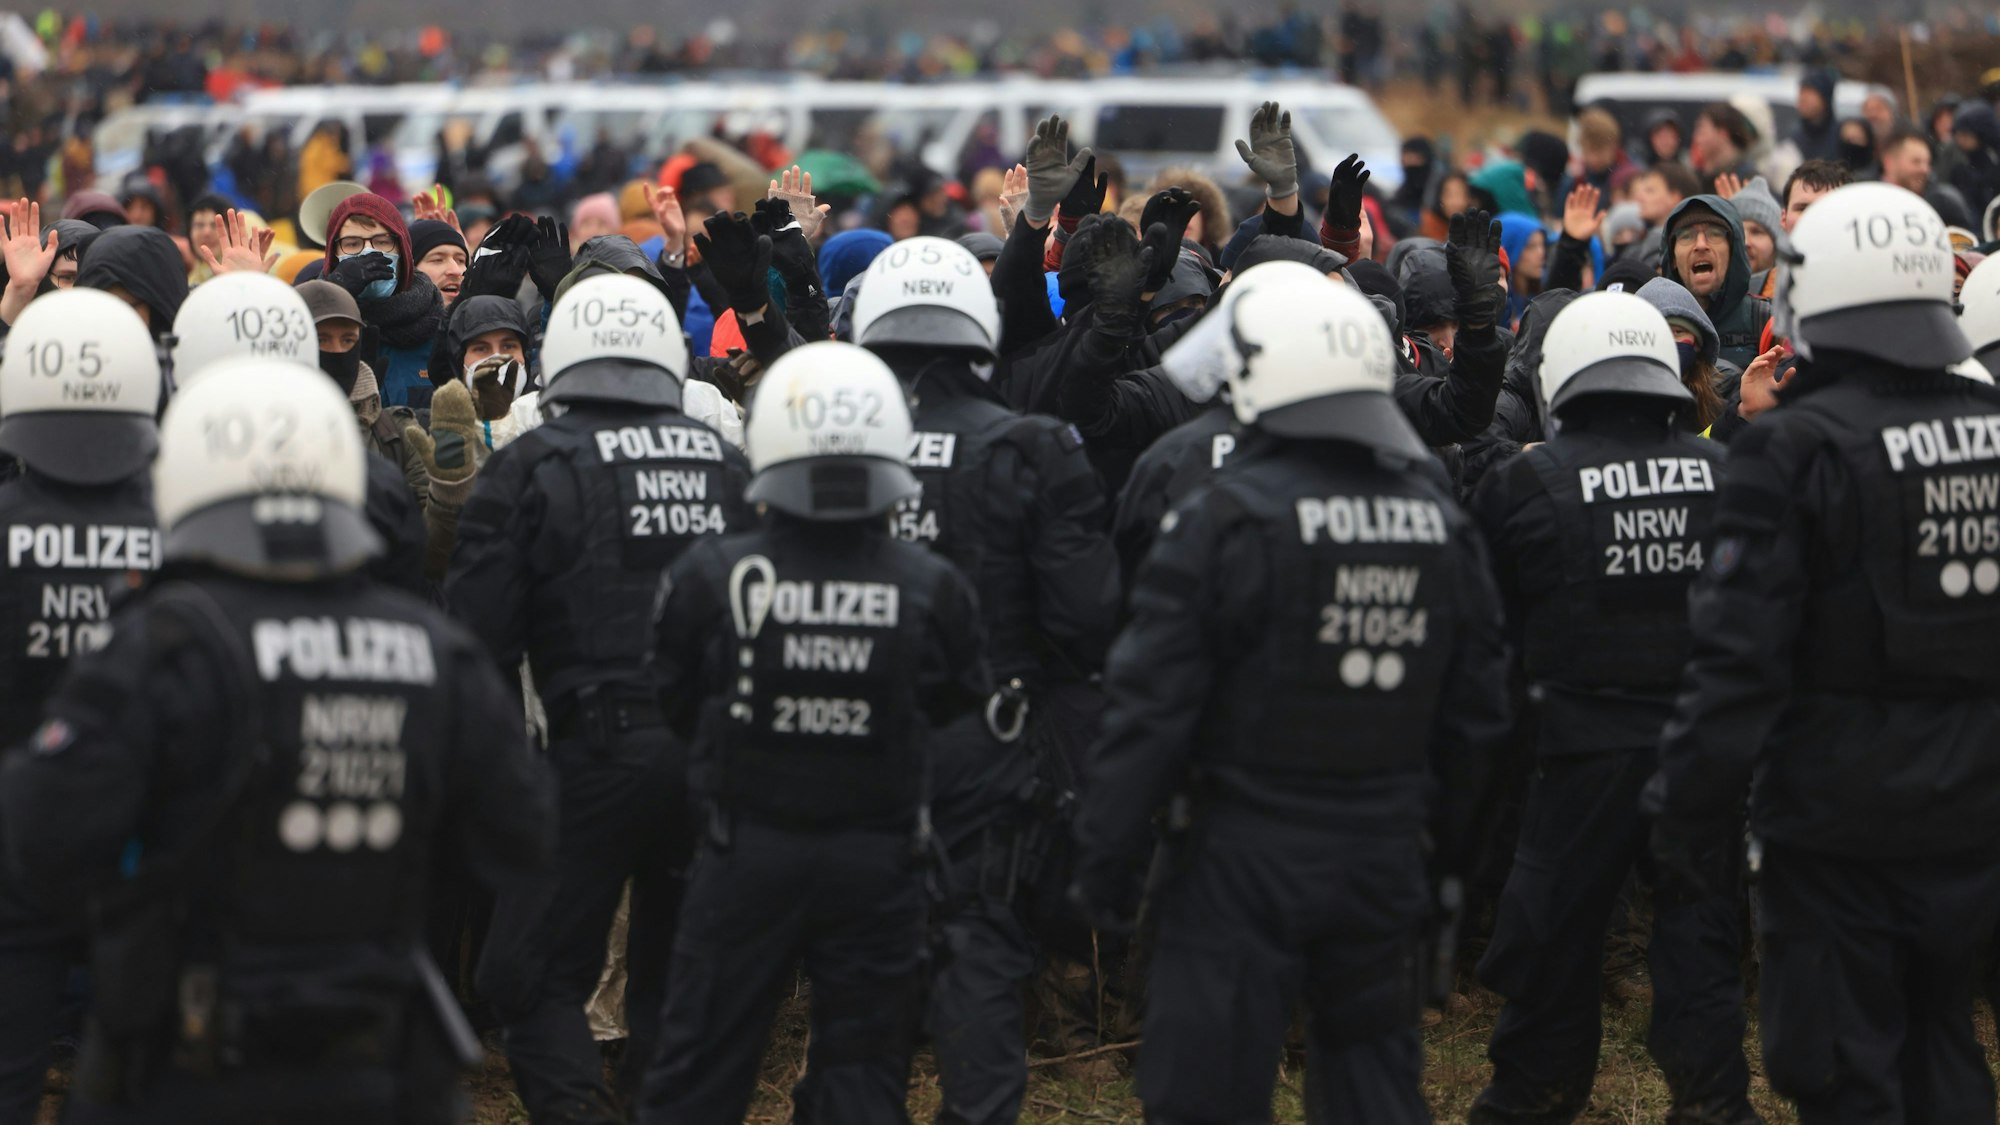 Ein Bild aus Januar zeigt Polizisten und Demonstranten, die sich gegenüberstehen.